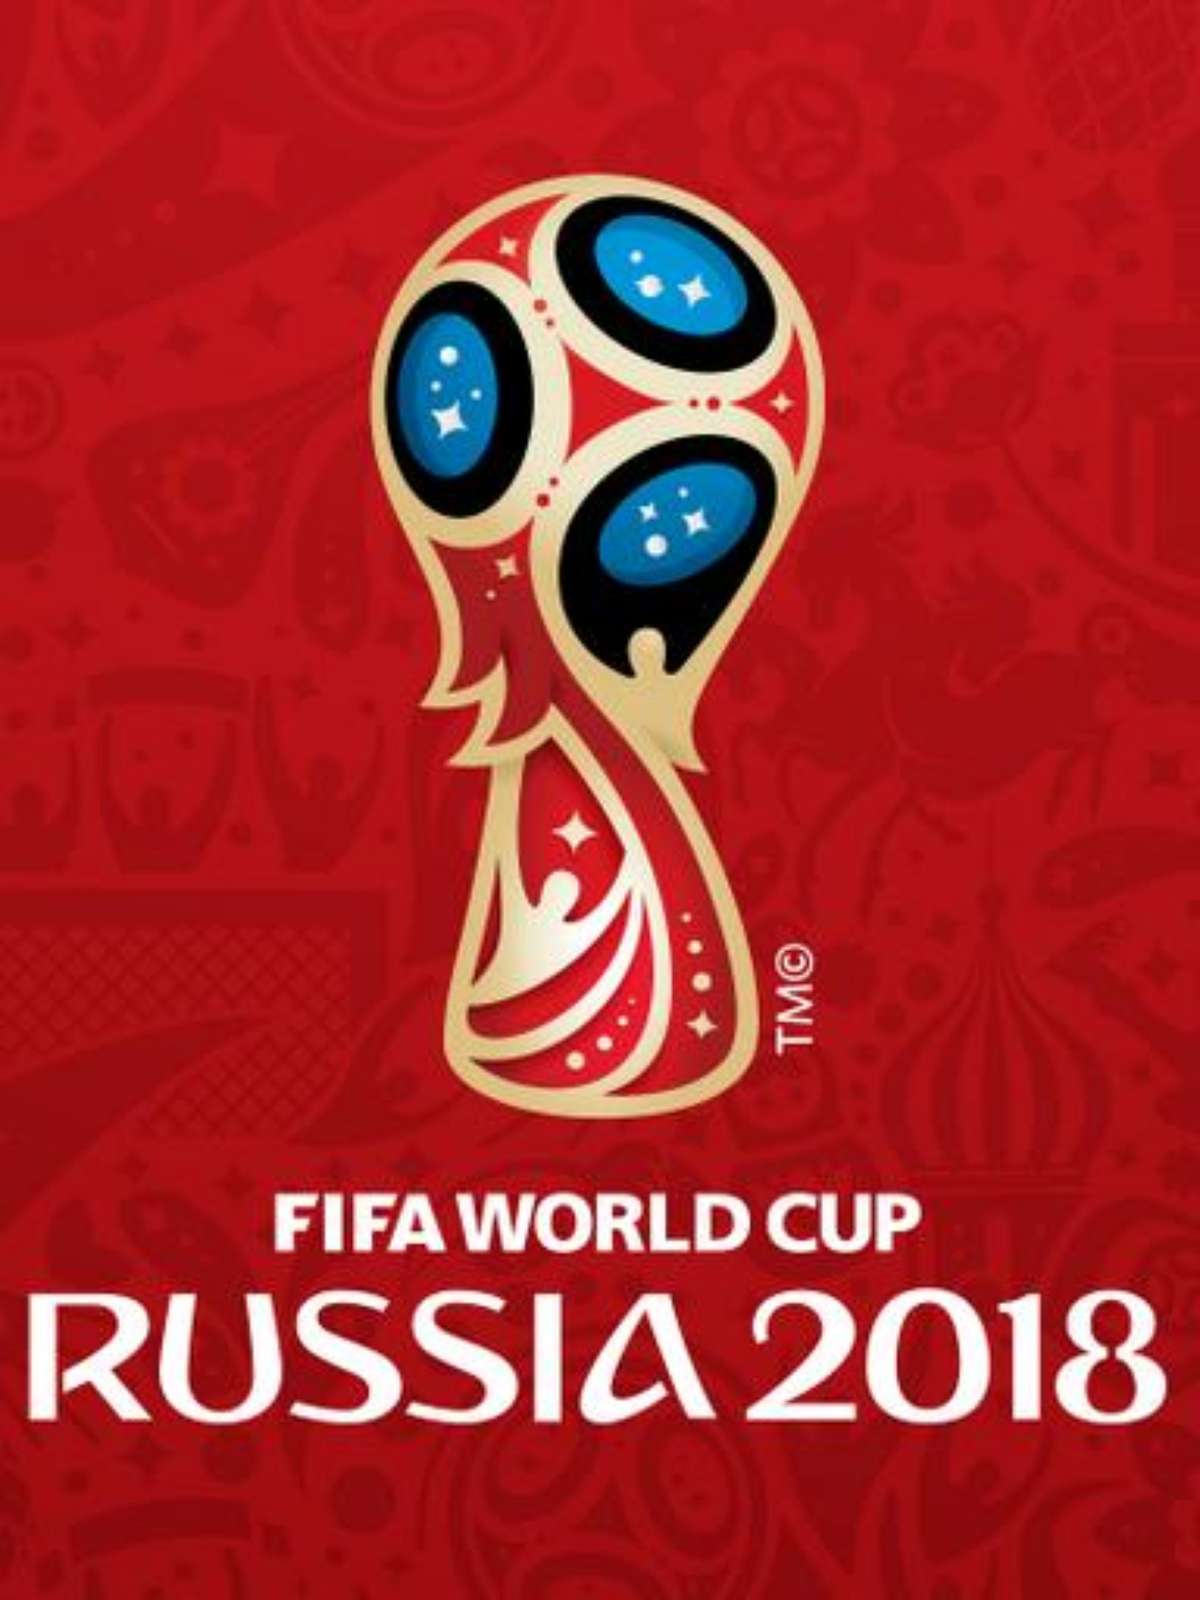 Fifa revela logo da Copa do Mundo de 2018 da Rússia, copa do mundo 2018